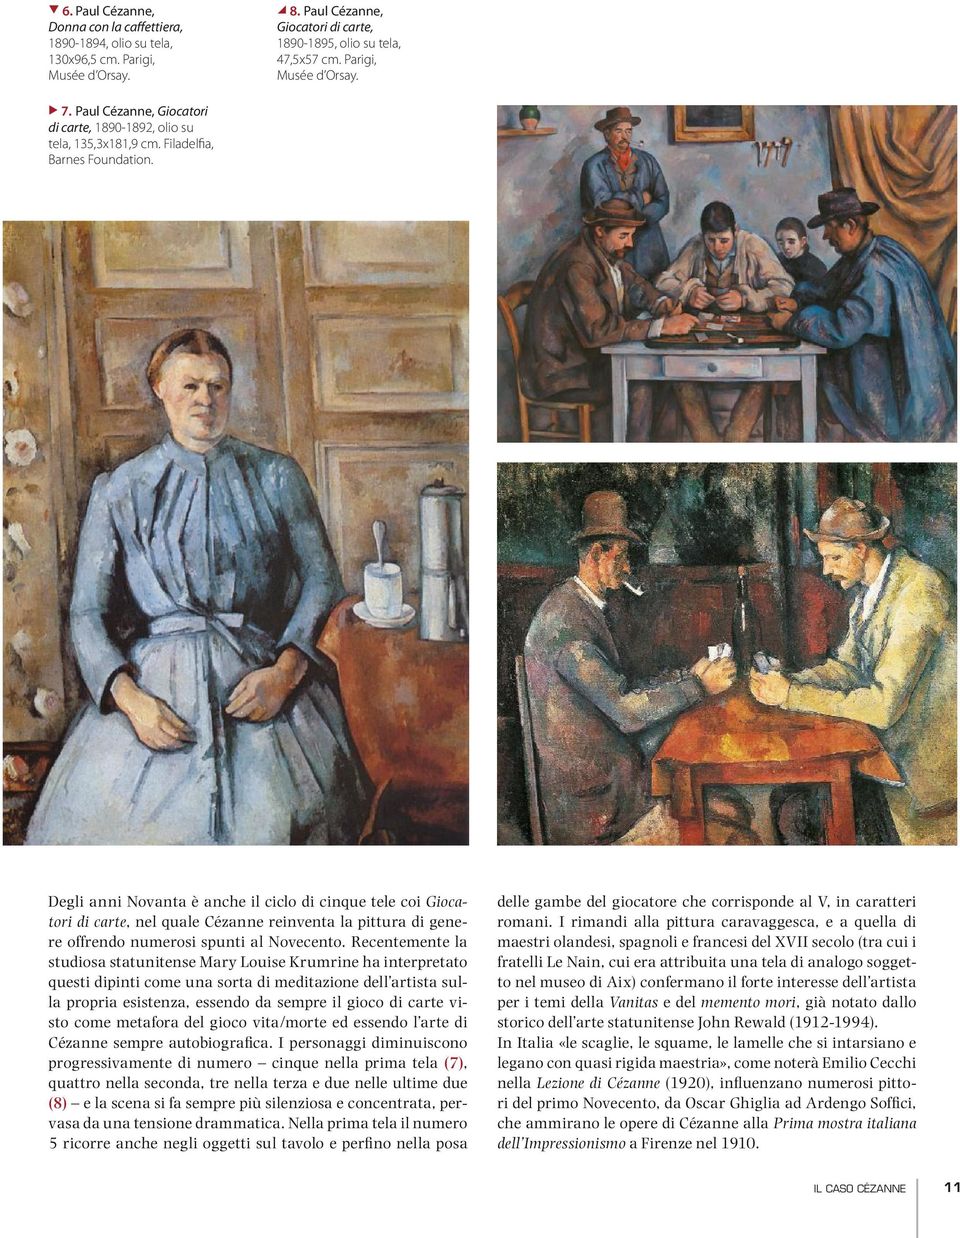 Degli anni Novanta è anche il ciclo di cinque tele coi Giocatori di carte, nel quale Cézanne reinventa la pittura di genere offrendo numerosi spunti al Novecento.